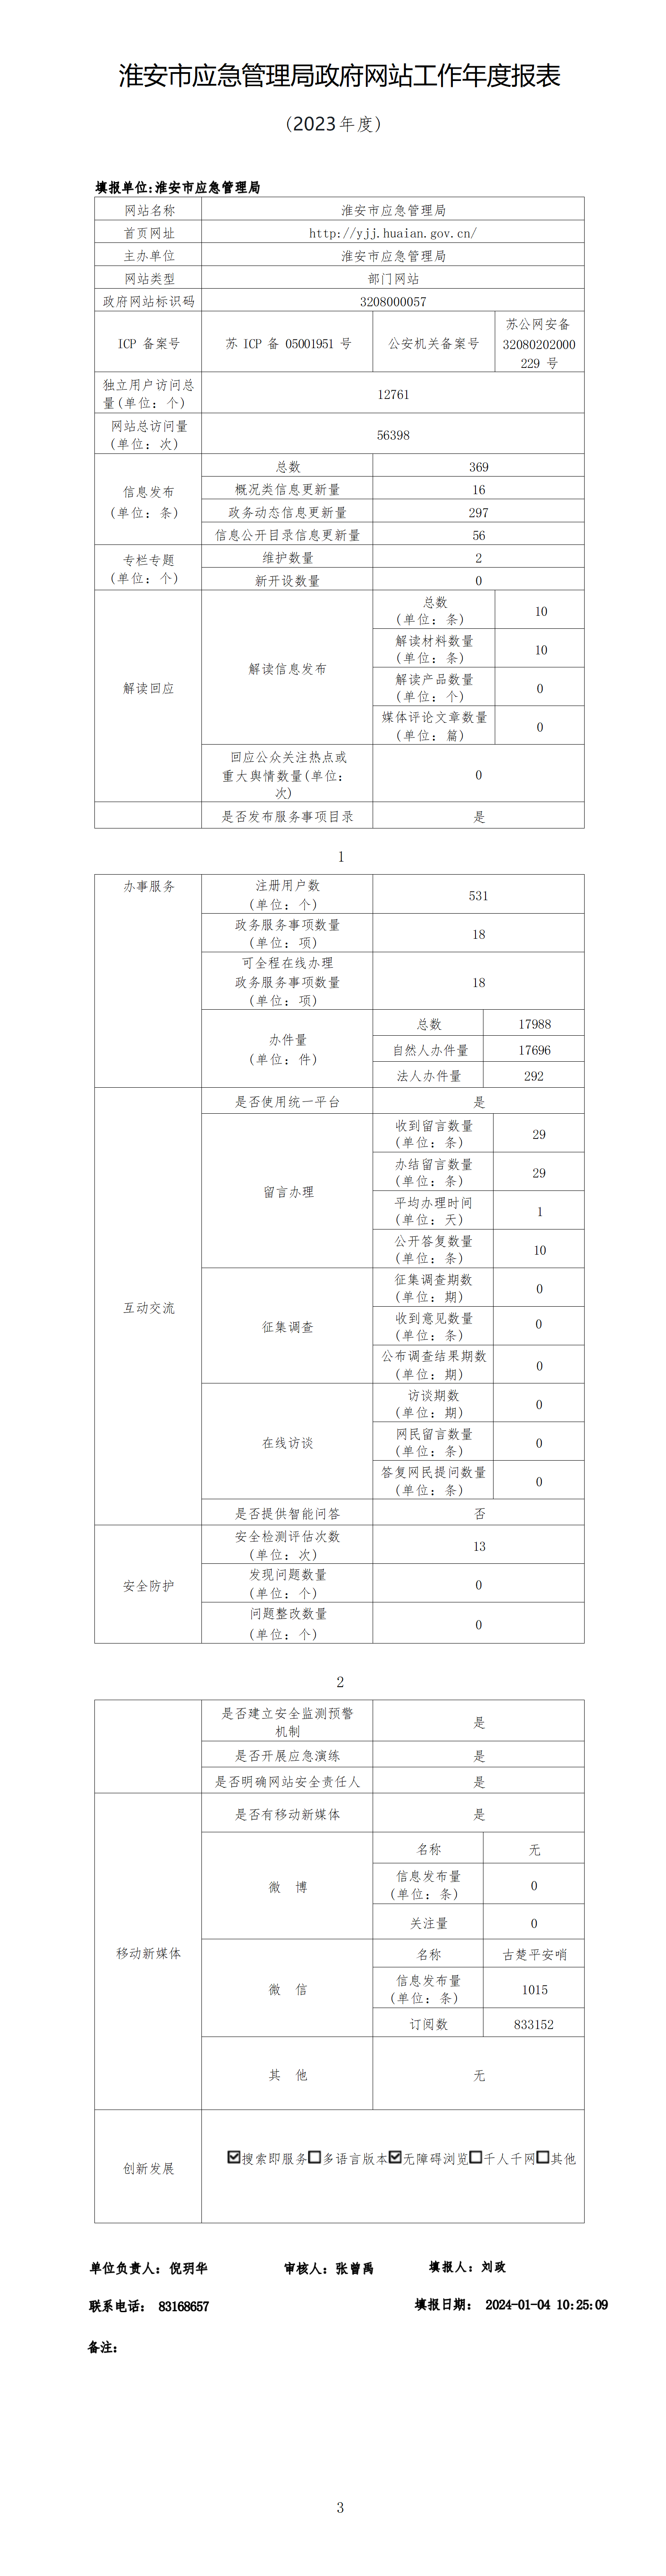 淮安市应急管理局政府网站工作年度报表（2023年度）_01.png